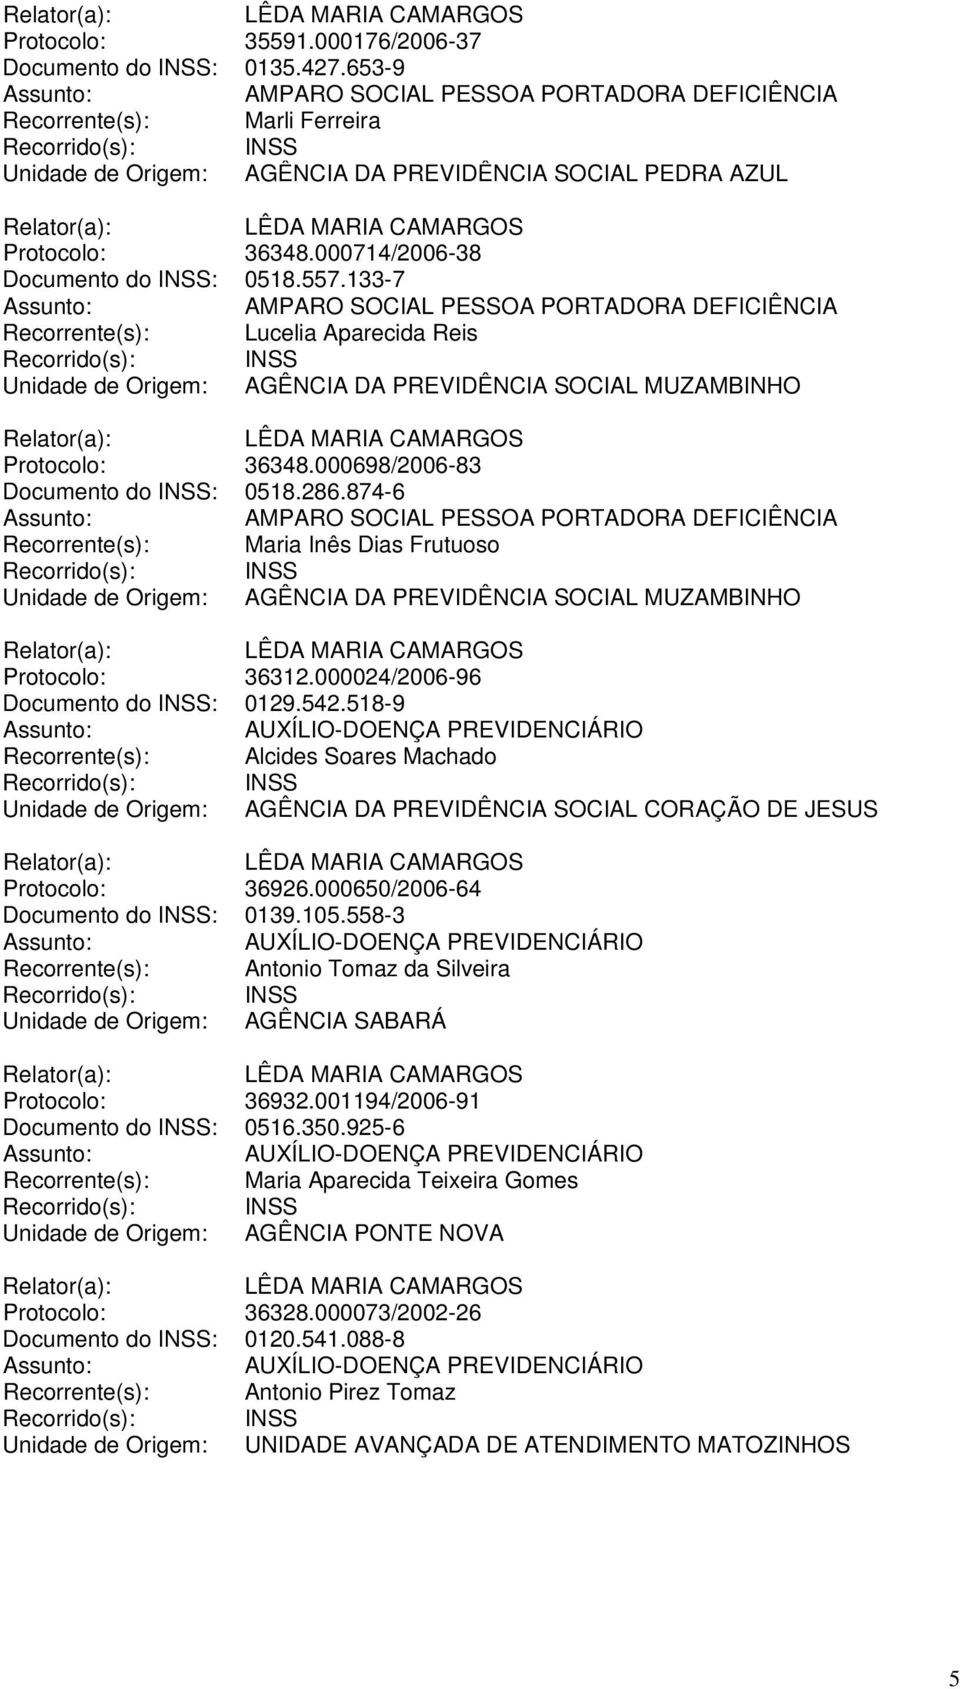 000698/2006-83 Documento do INSS: 0518.286.874-6 Recorrente(s): Maria Inês Dias Frutuoso Unidade de Origem: AGÊNCIA DA PREVIDÊNCIA SOCIAL MUZAMBINHO Protocolo: 36312.